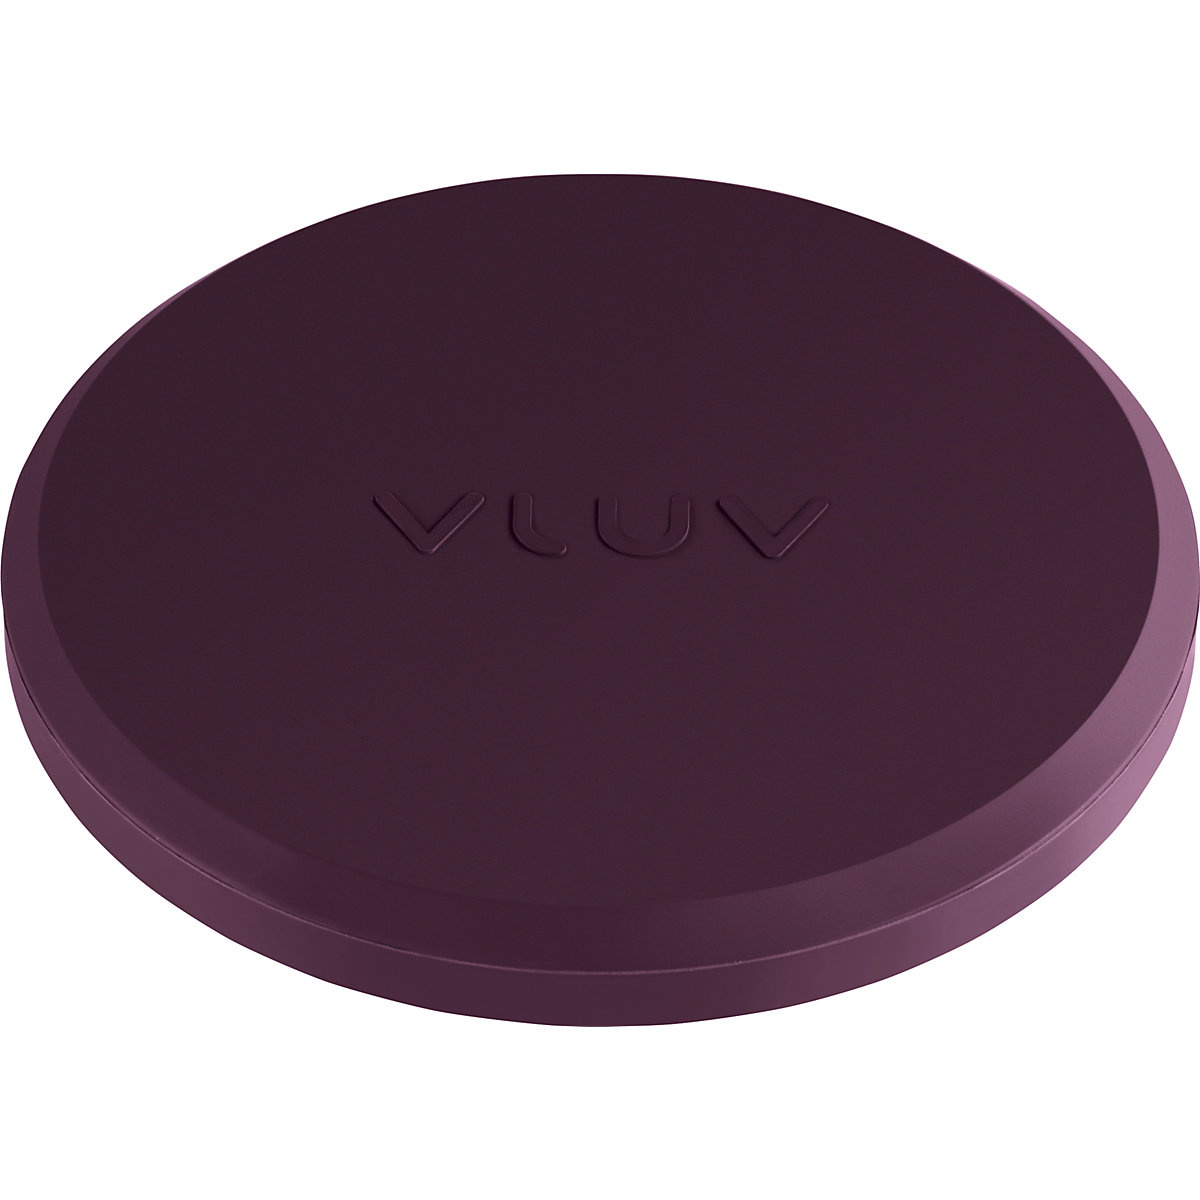 UPP rubber weight – VLUV, for stabilisation, Ø 180 mm, blackberry